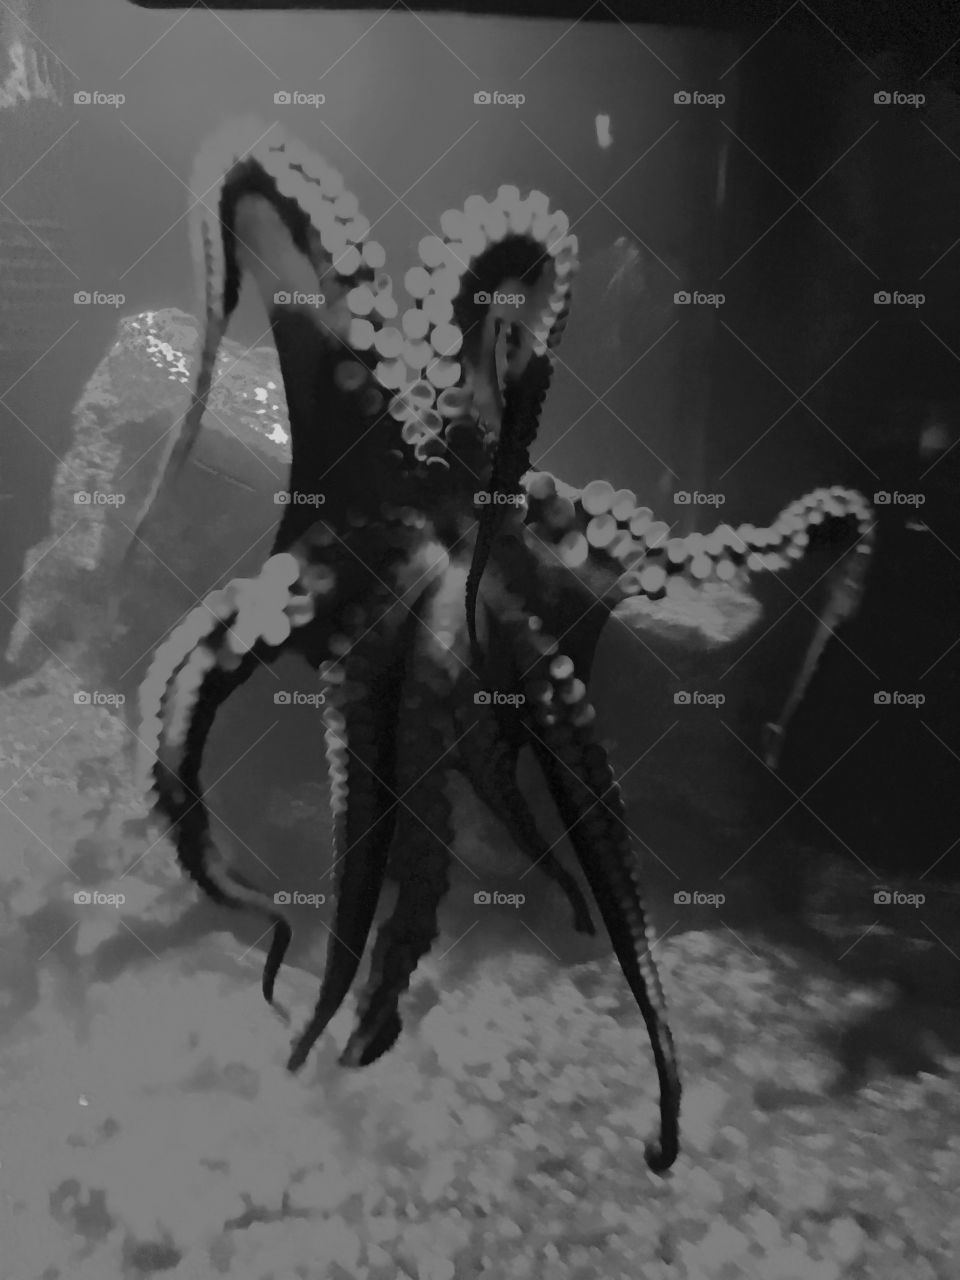 Octopus underbelly